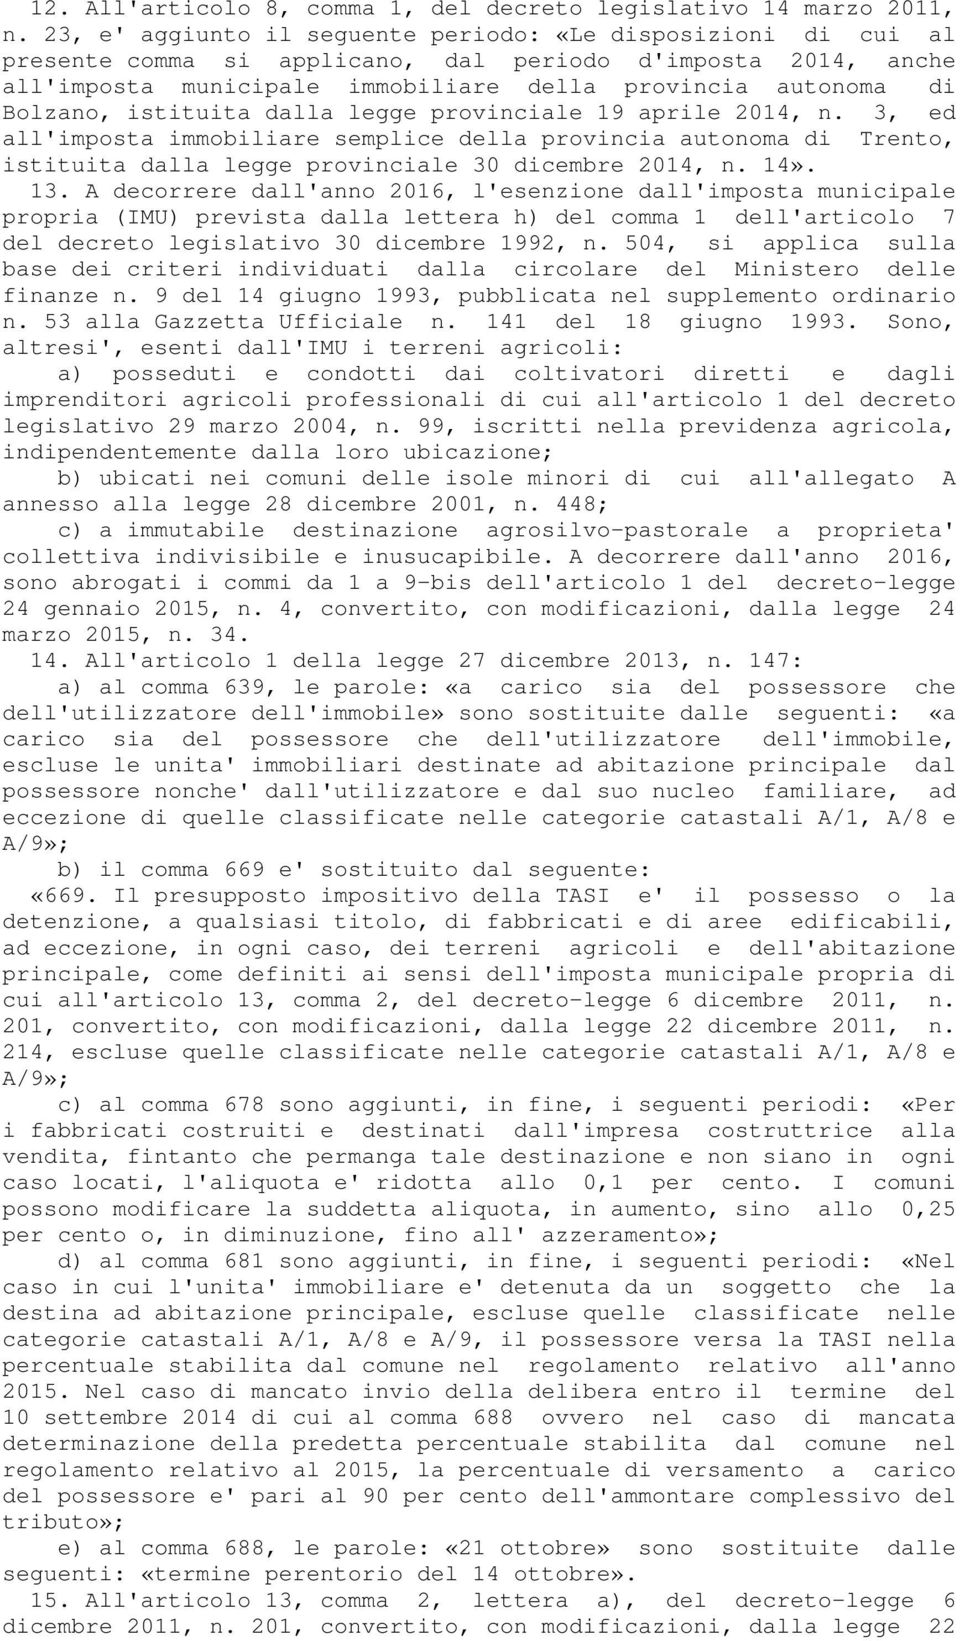 istituita dalla legge provinciale 19 aprile 2014, n. 3, ed all'imposta immobiliare semplice della provincia autonoma di Trento, istituita dalla legge provinciale 30 dicembre 2014, n. 14». 13.